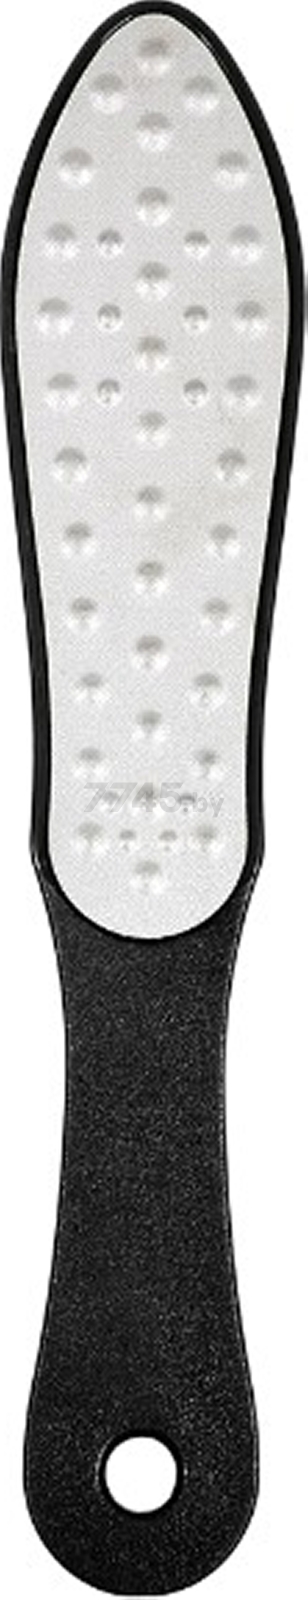 Пилка БАННЫЕ ШТУЧКИ Лазерная двусторонняя с абразивной стороной для ног (40372)